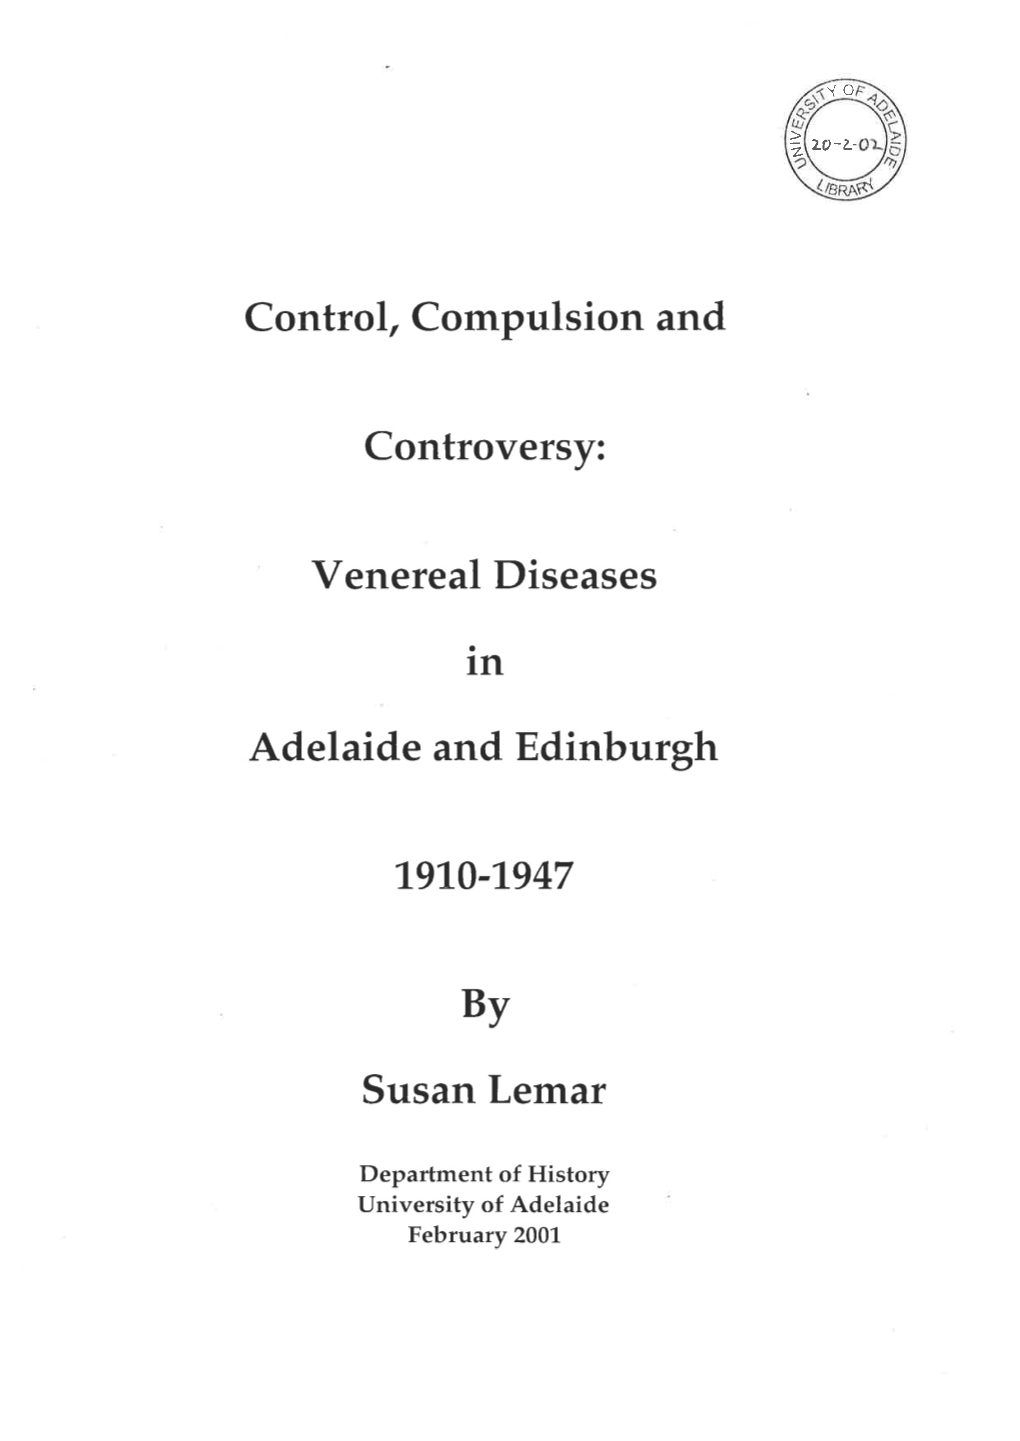 Venereal Diseases in Adelaide and Edinburgh 1910-1947